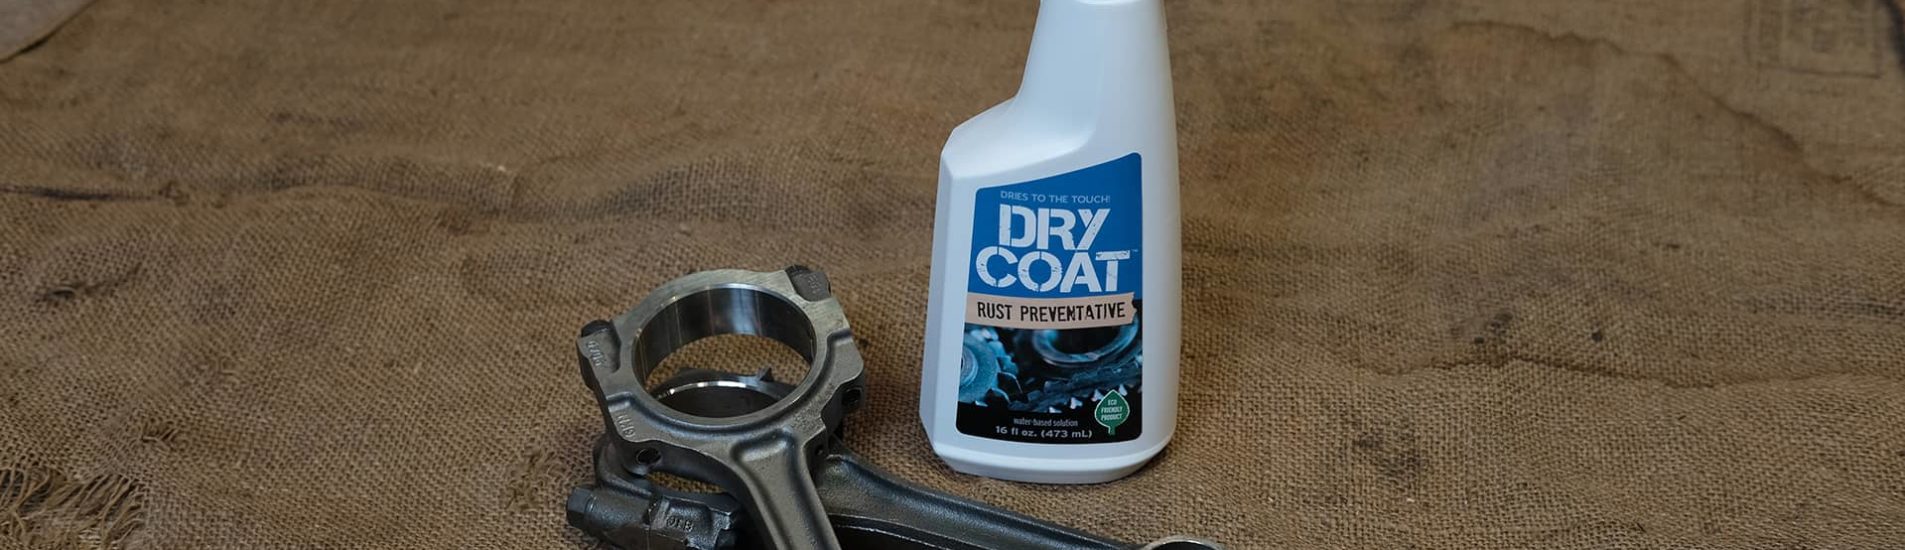 Dry Coat Rust Preventative bottle